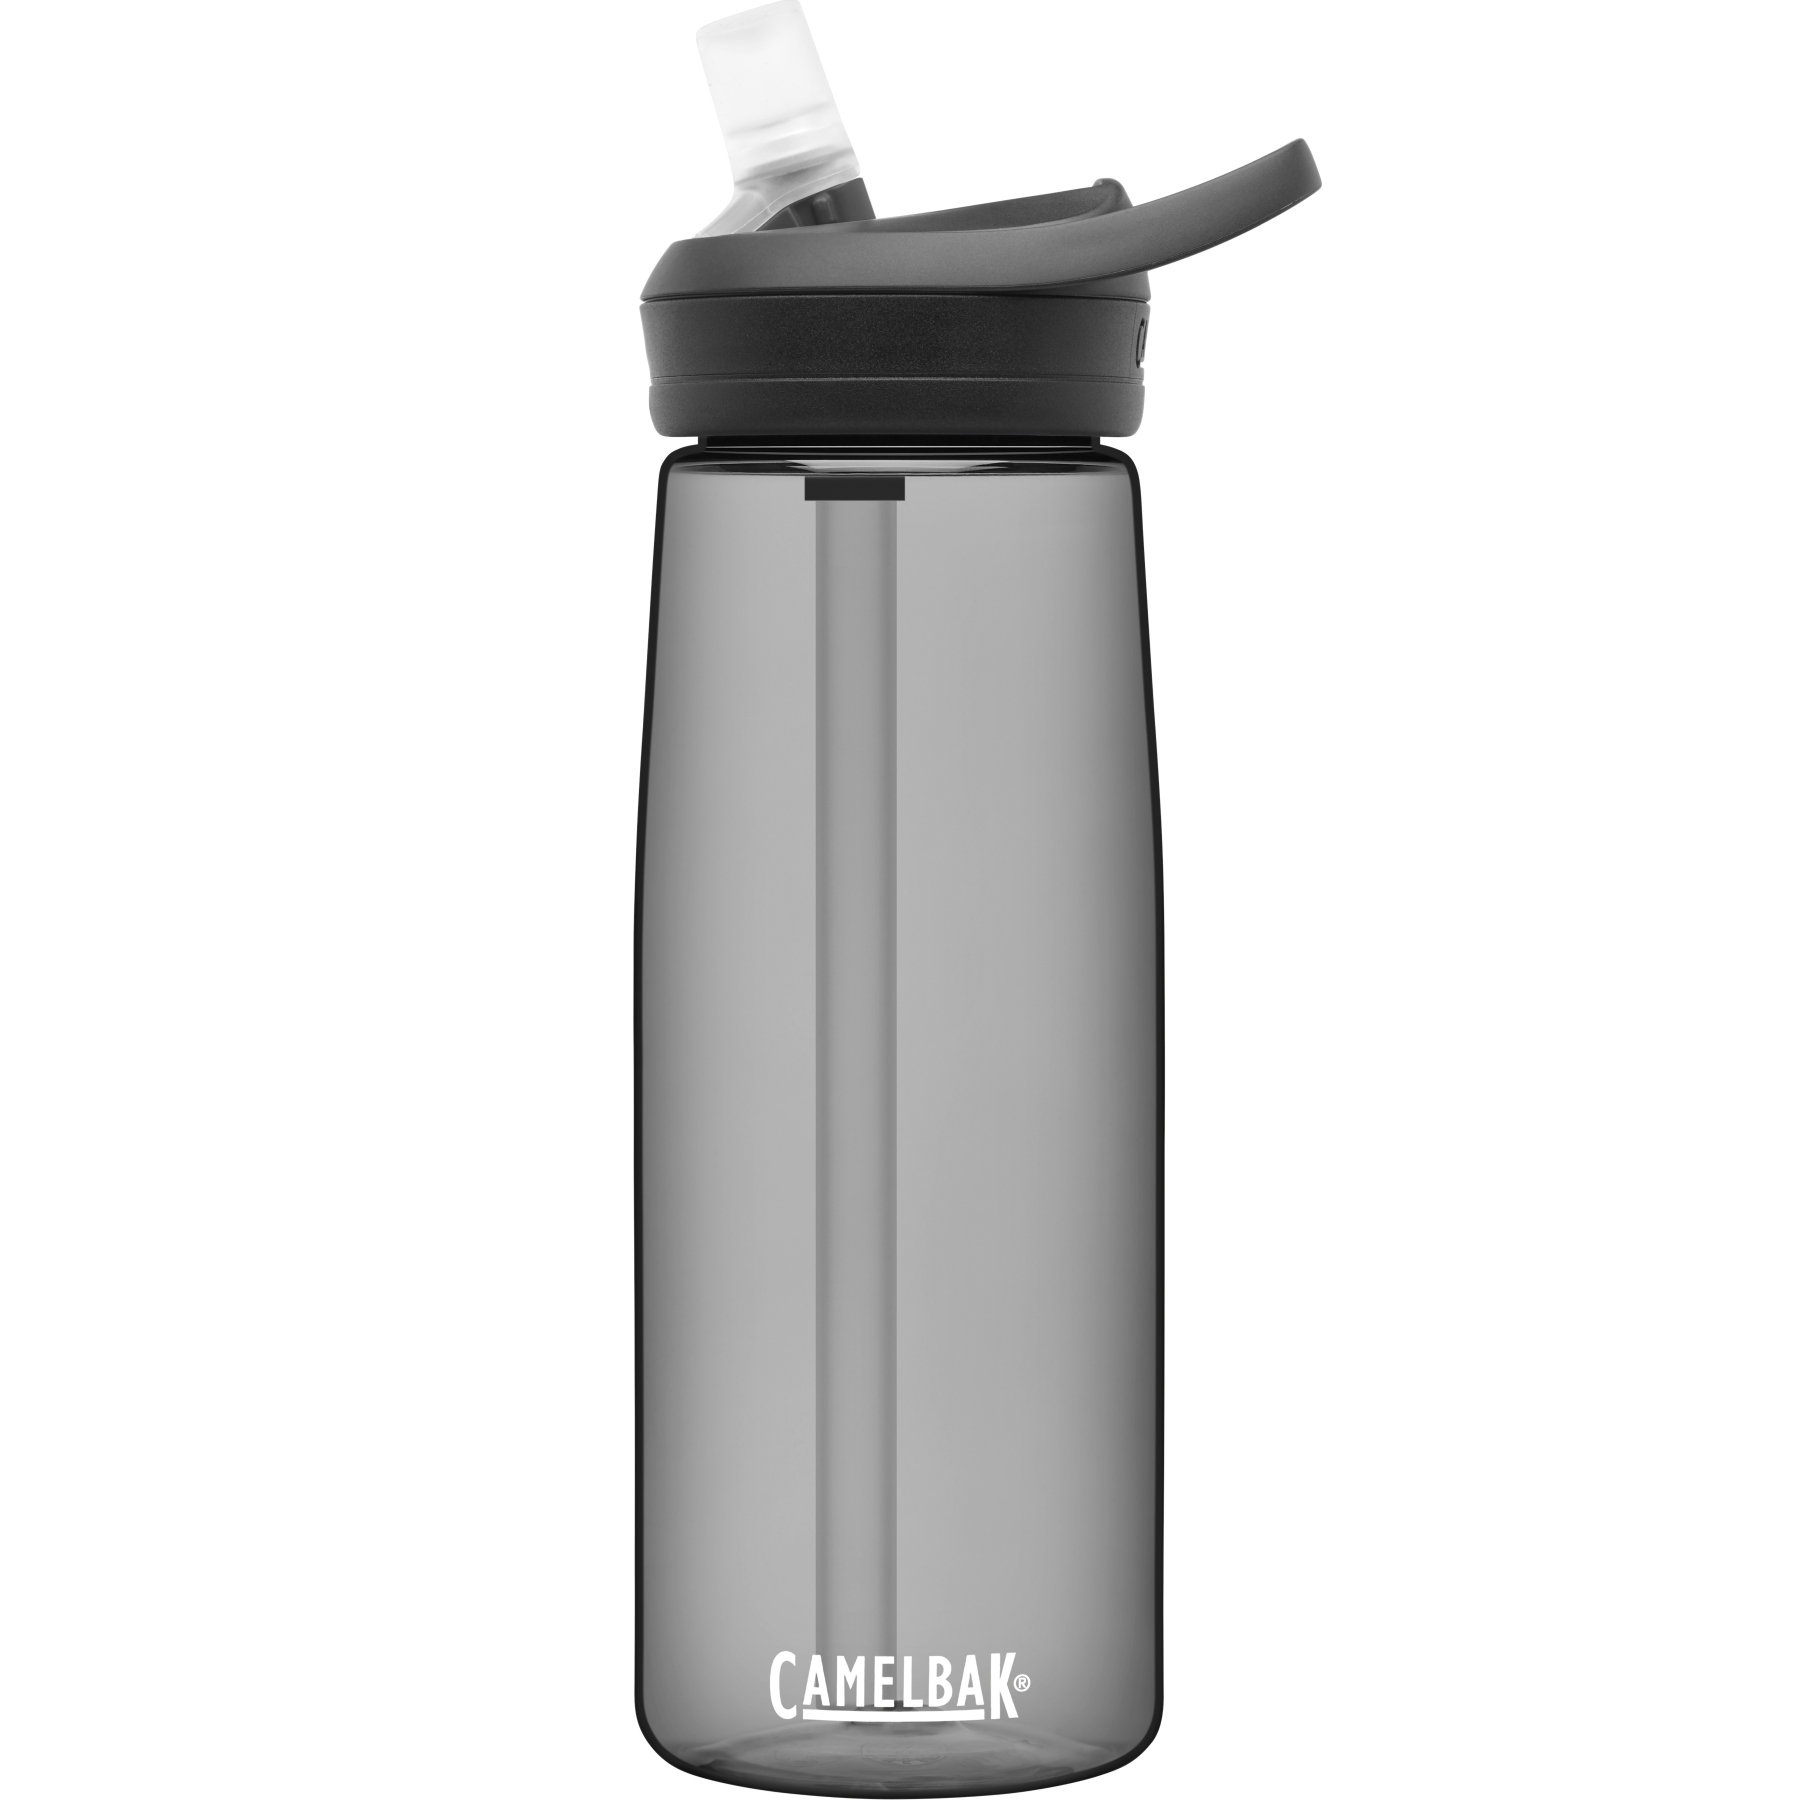 Produktbild von CamelBak Eddy+ Trinkflasche 750ml - charcoal